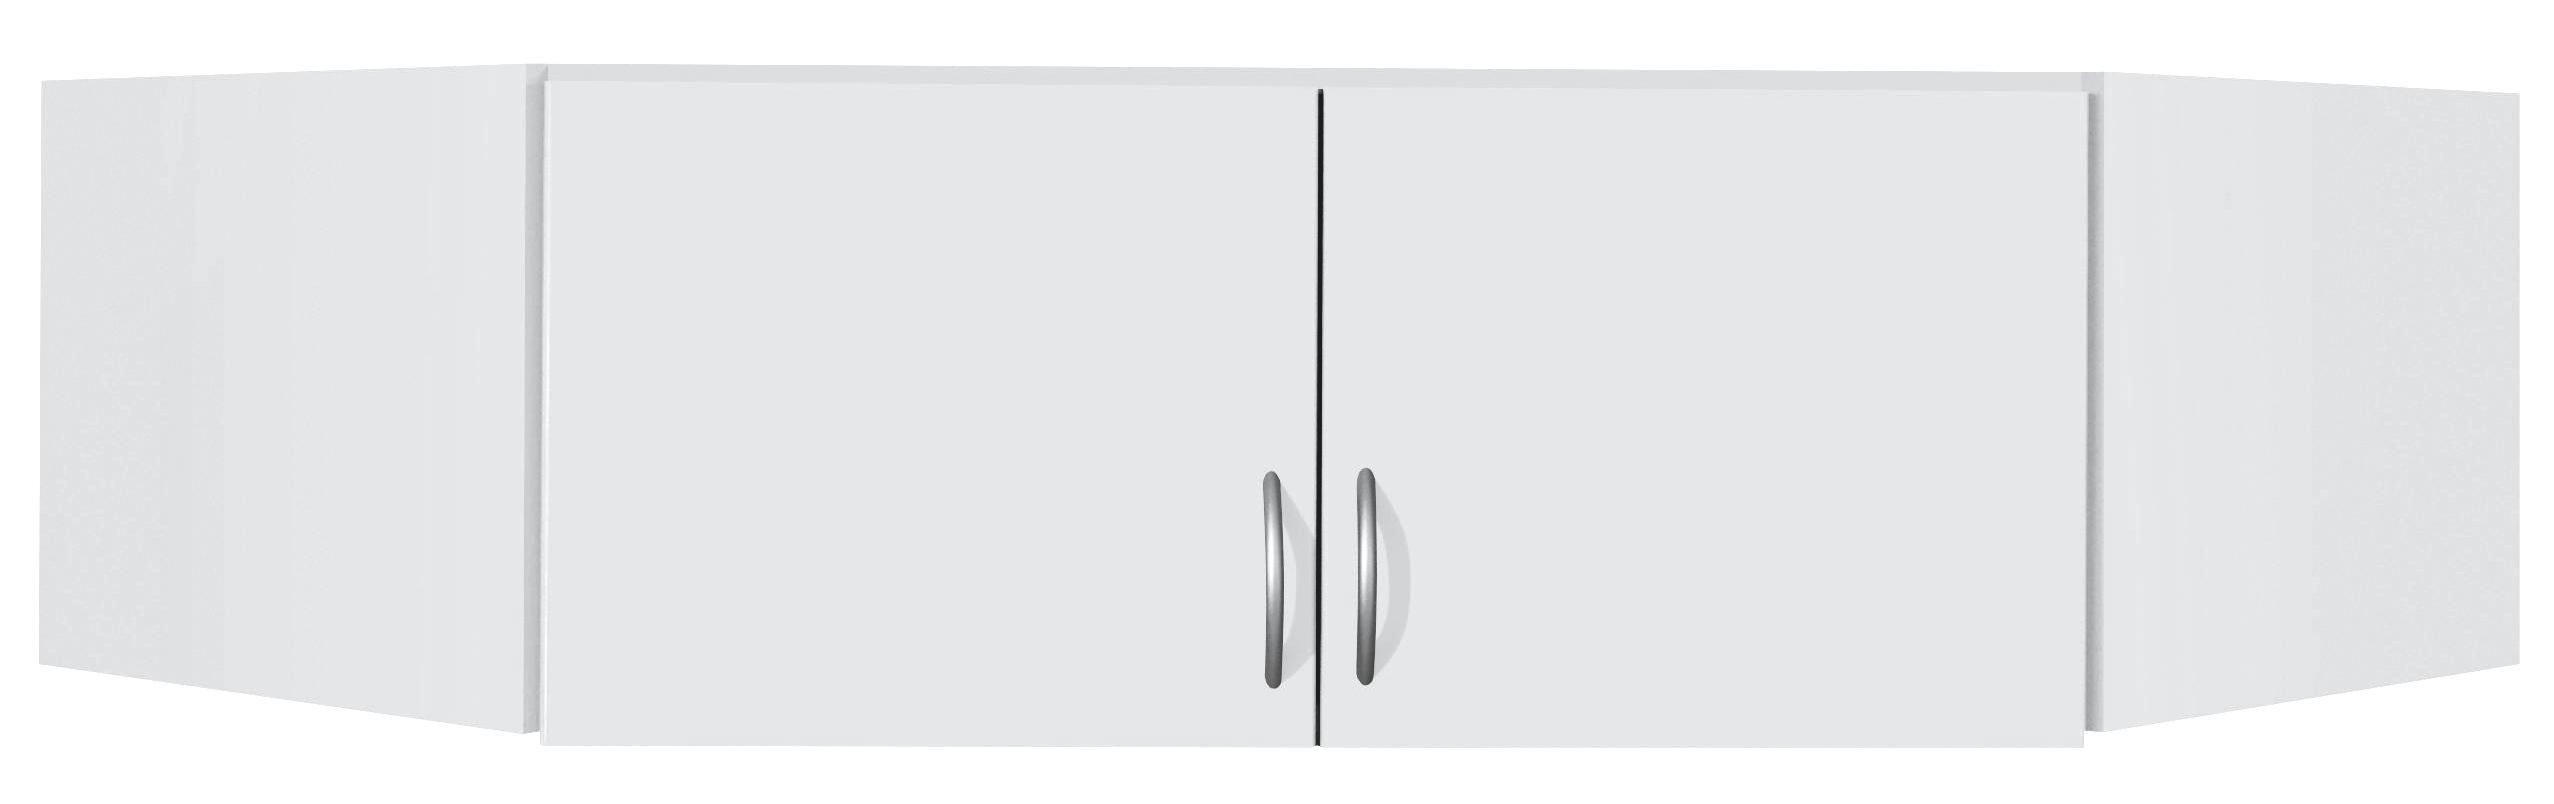 AUFSATZSCHRANK 117/39/52,2 cm   - Silberfarben/Weiß, Design, Holzwerkstoff/Kunststoff (117/39/52,2cm) - Boxxx